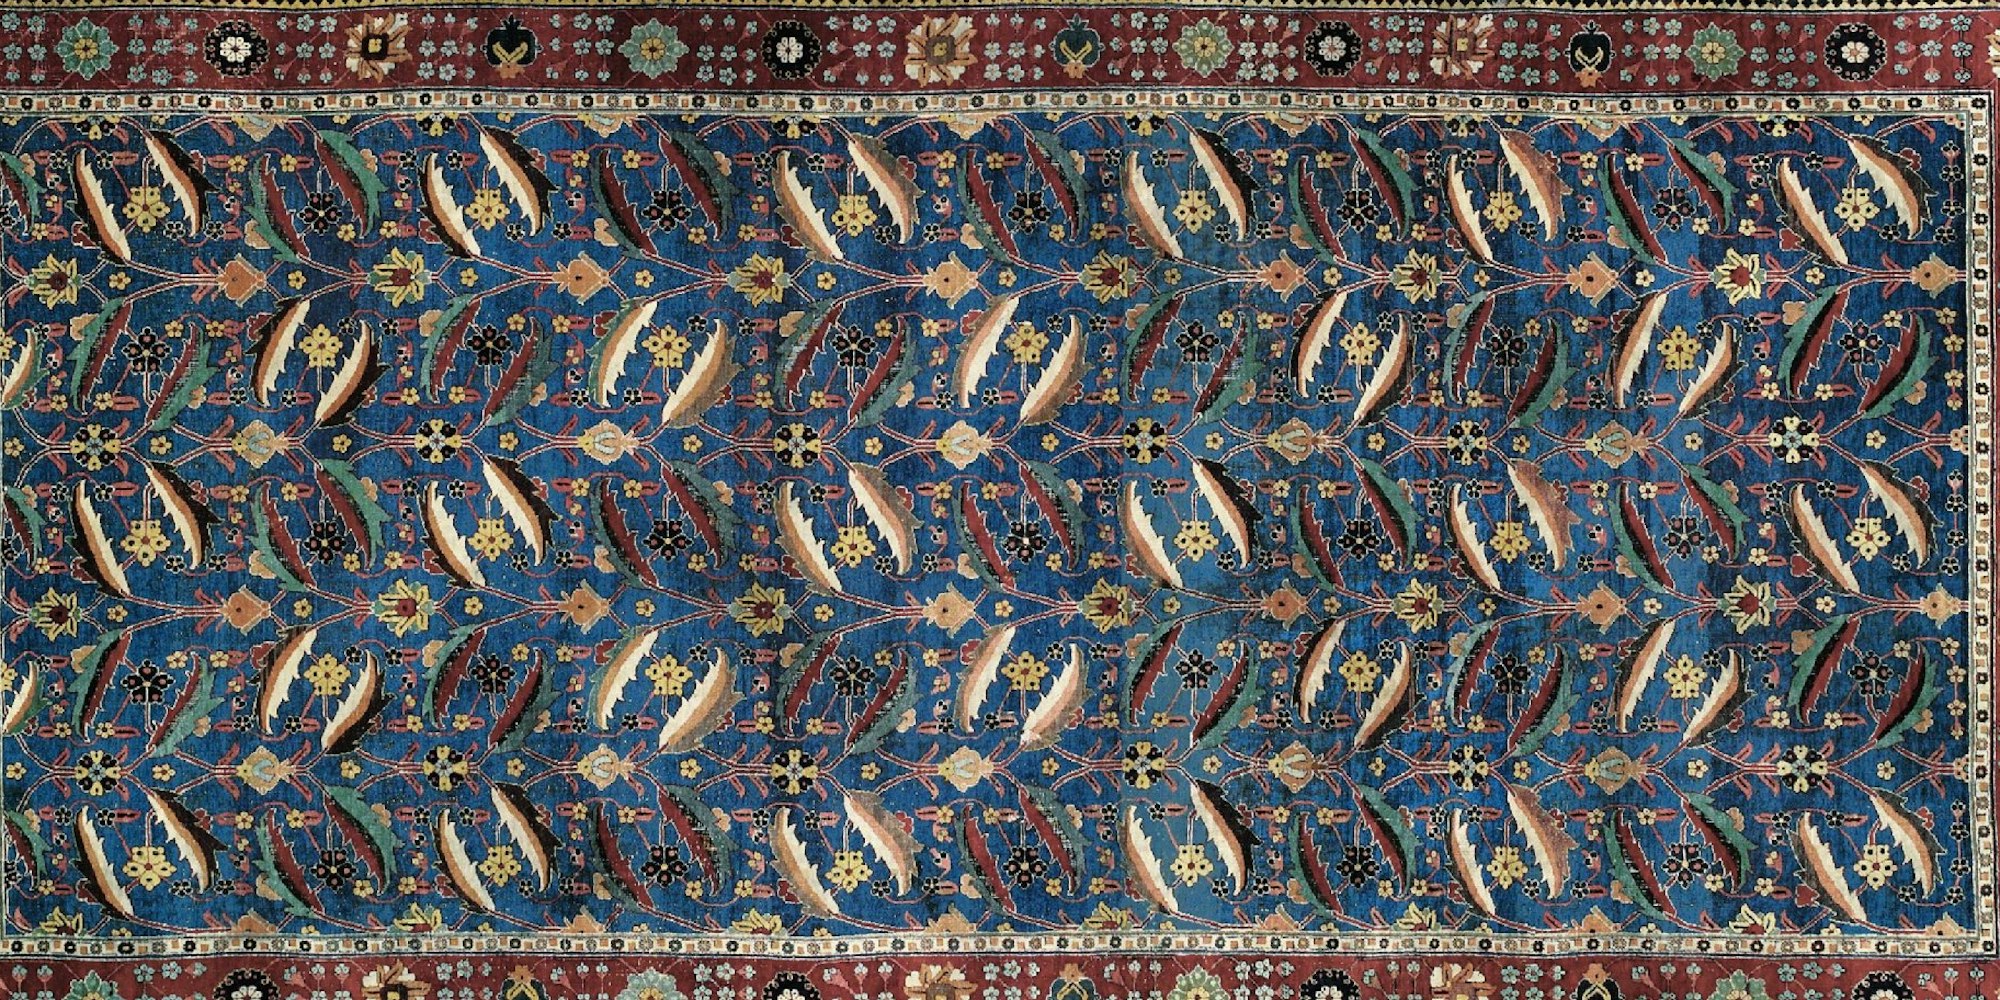 Der Vasenteppich aus der persischen Provinz Kerman wurde im Jahr 2010 im Londoner Auktionshaus Christie's für umgerechnet 7,2 Millionen Euro versteigert.